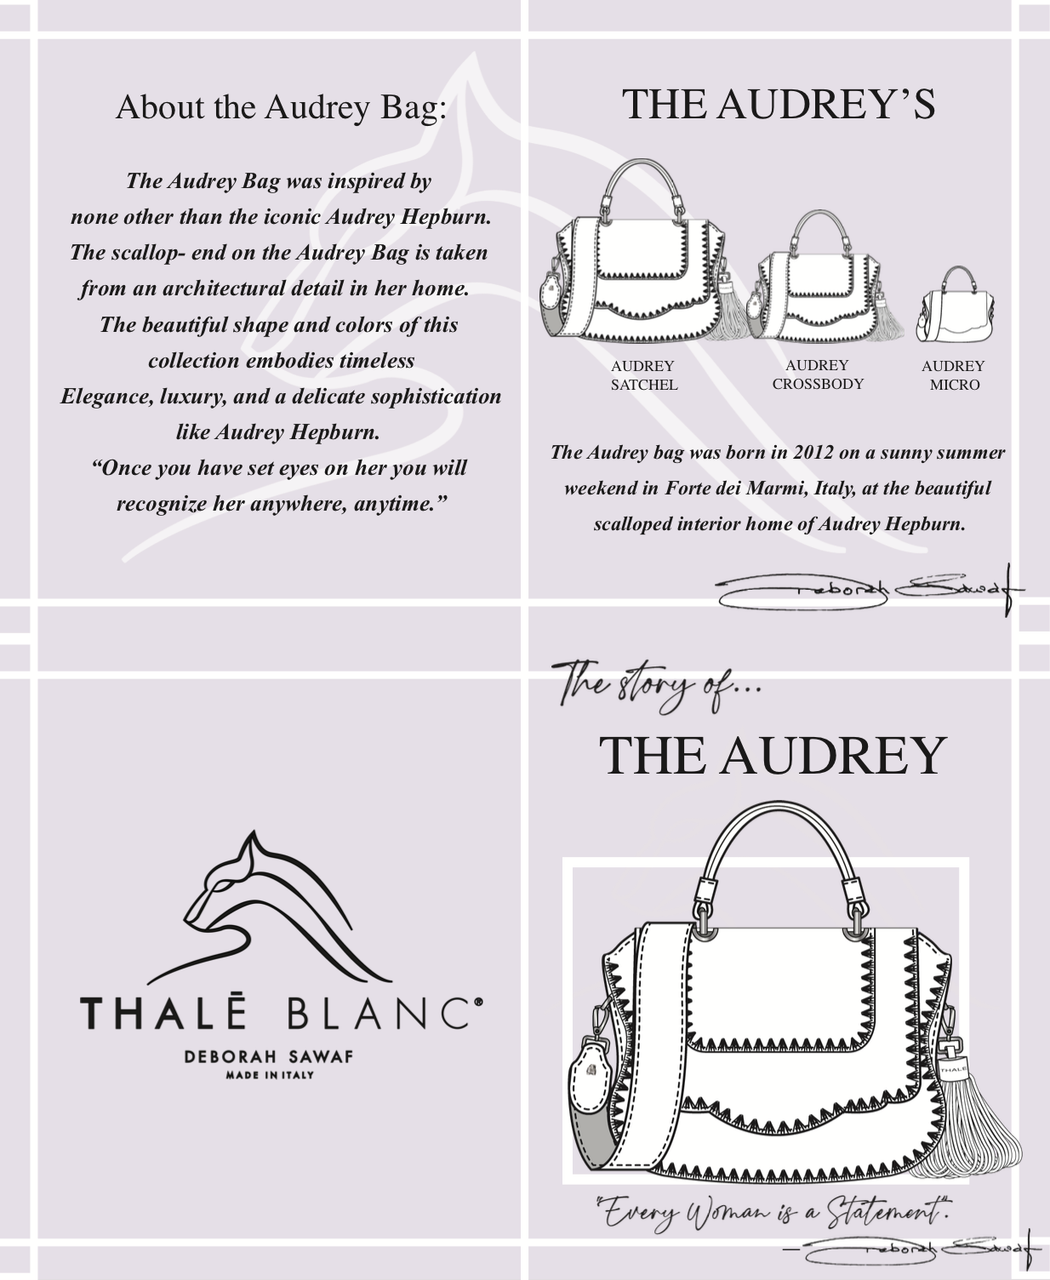 Audrey Satchel: White Designer Handbag with Black Stitching